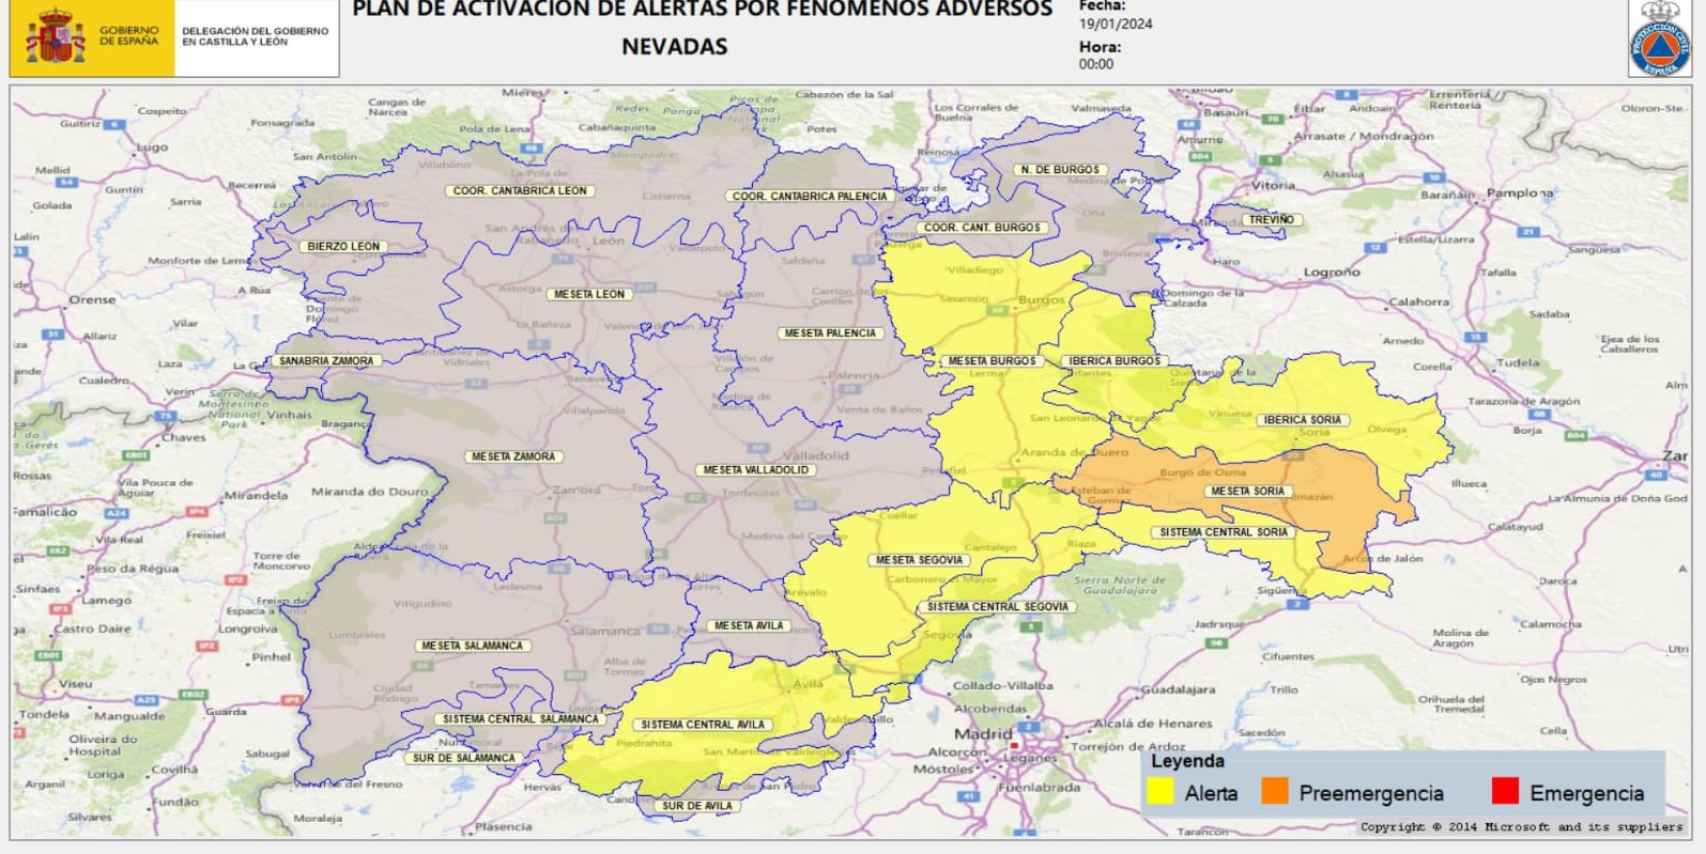 Mapa del plan de activación de alertas por nevadas en Castilla y León